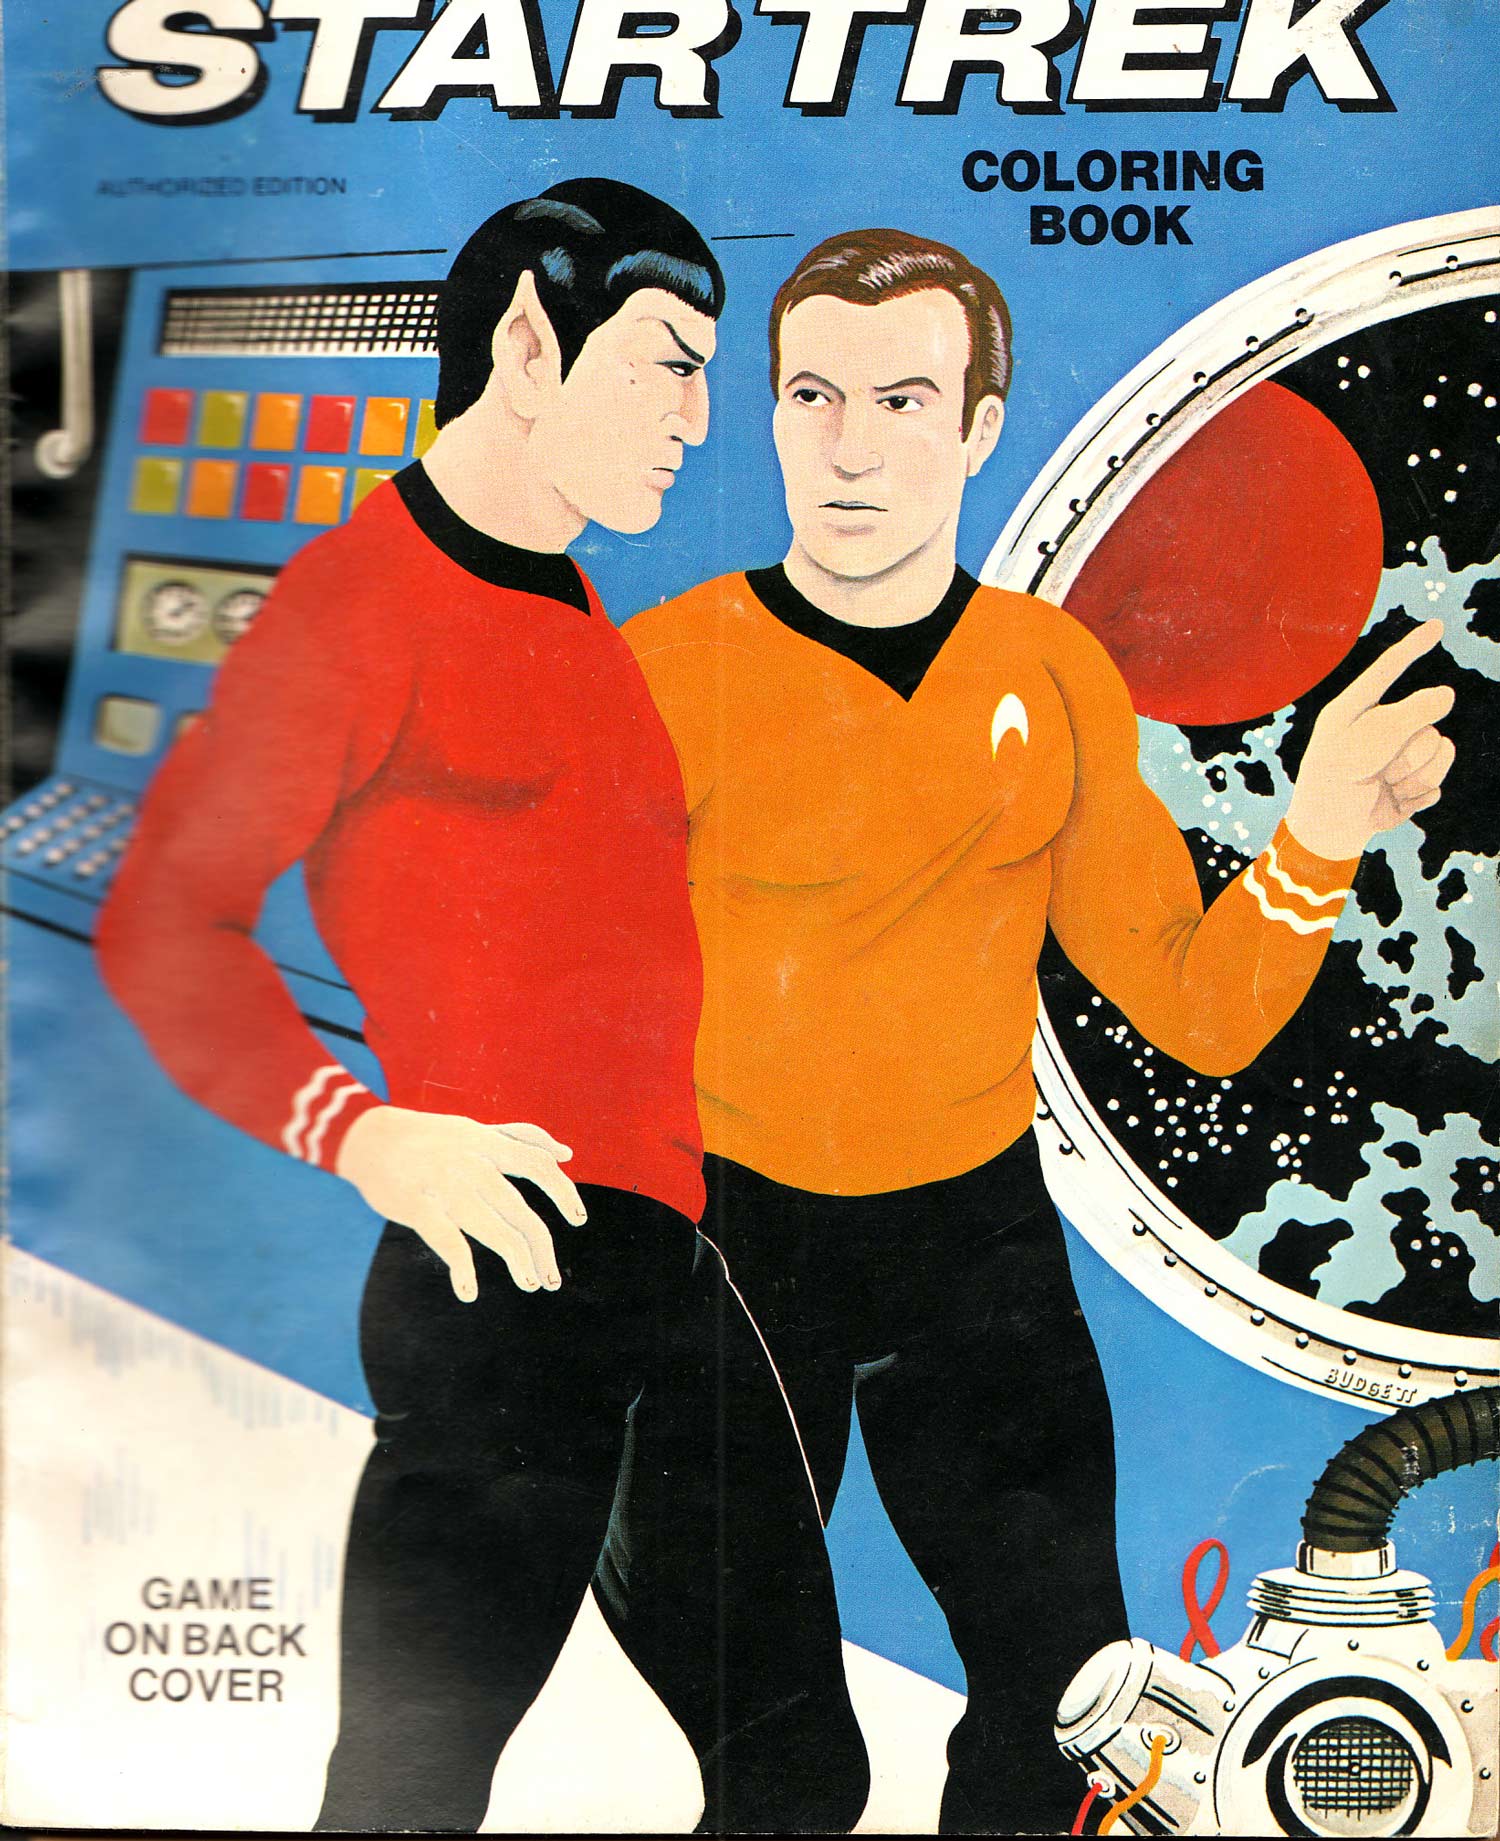 Star Trek Coloring Book By Saalfield 1975